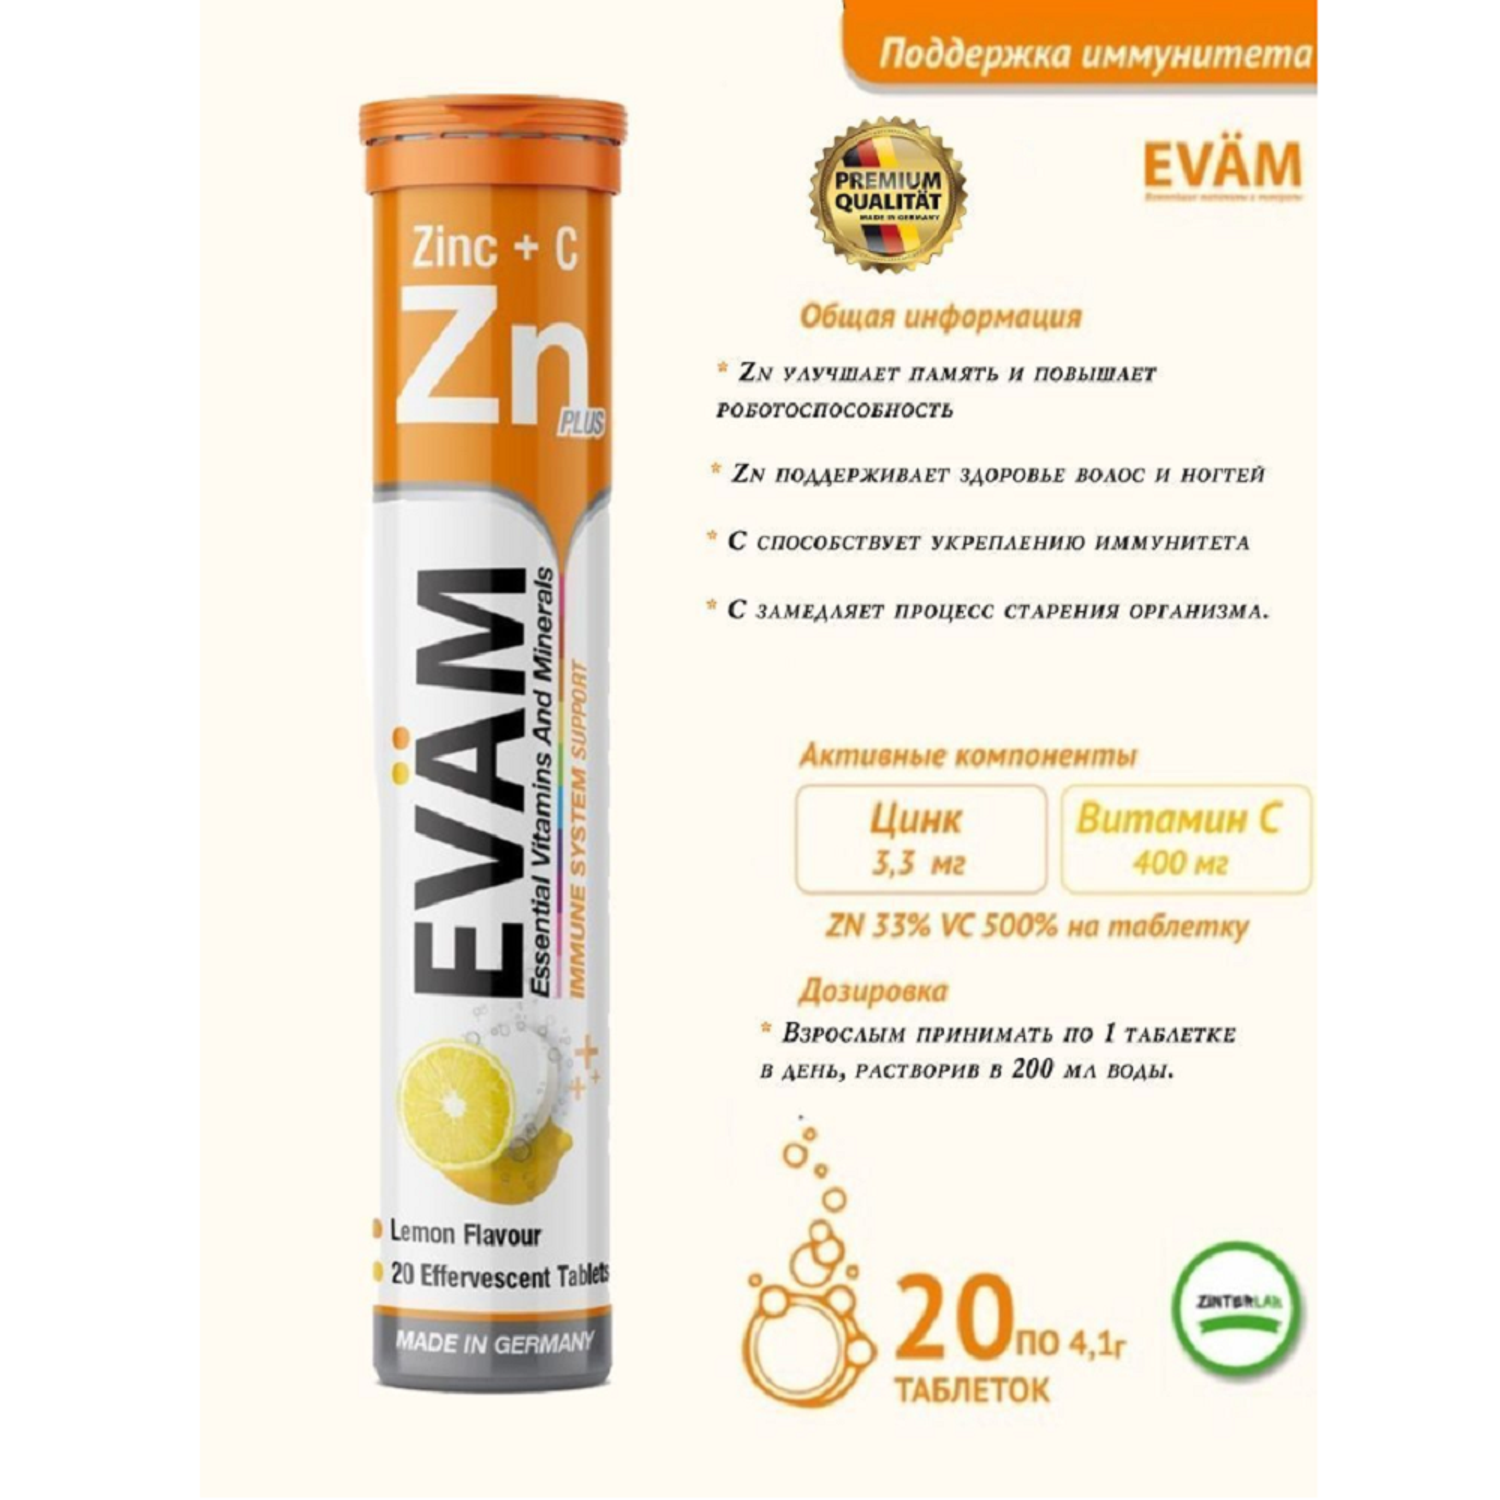 Шипучие витамины EVAM Zn С Цинк и Аскорбиновая кислота 20 таблеток - фото 3